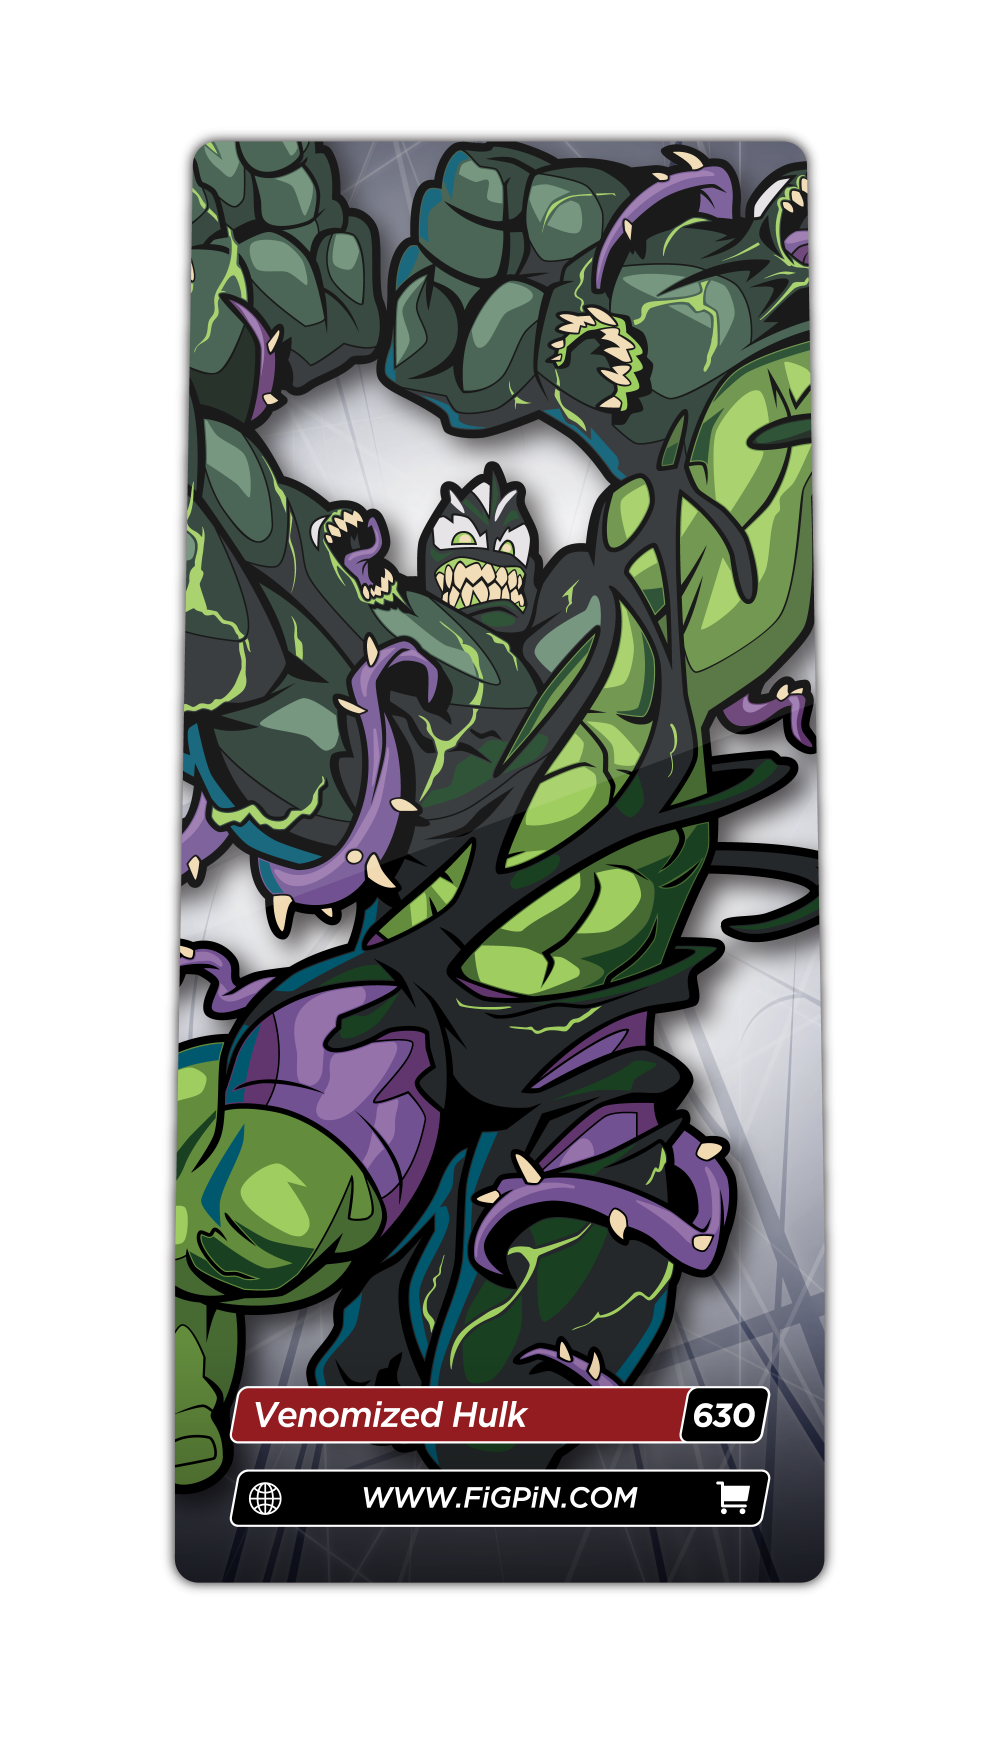 Spider-Man Maximum Venom: Venomized Hulk FiGPiN Exclusive #630